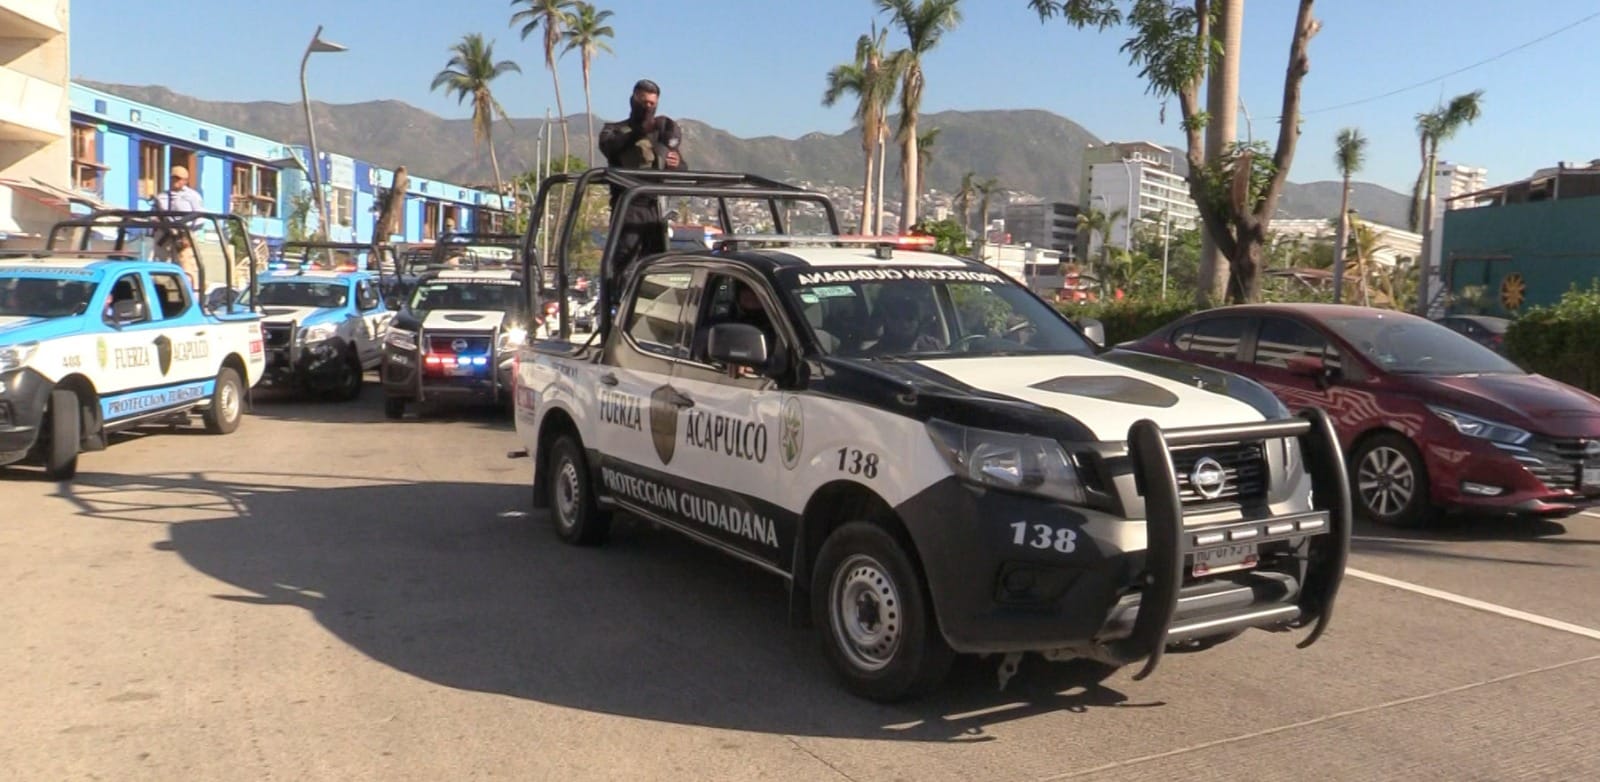 La SSP admite que Acapulco tiene déficit de policías